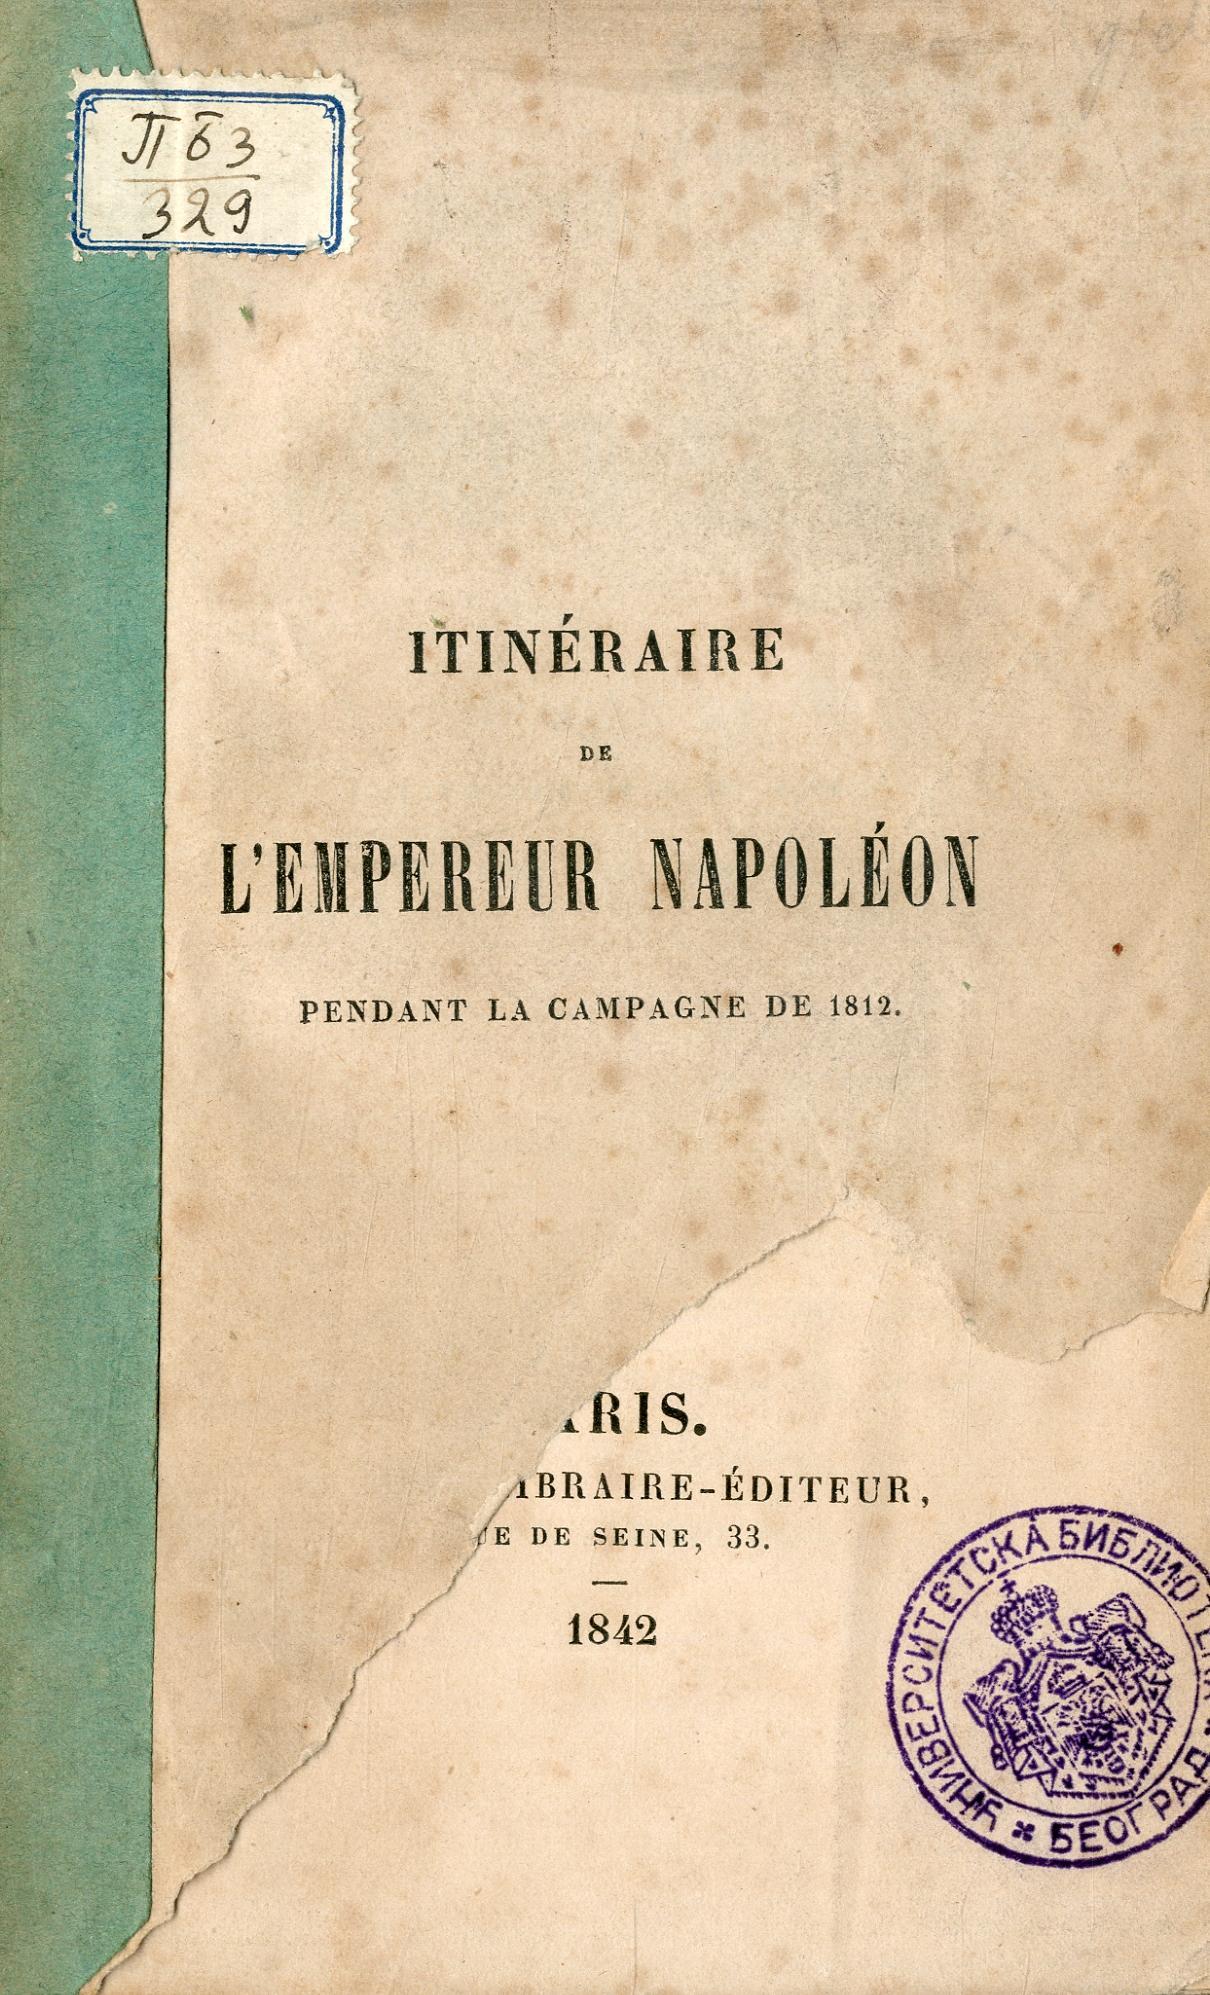 Itinéraire de l'empereur Napoléon pendant la campagne de 1812 / par le baron Denniée